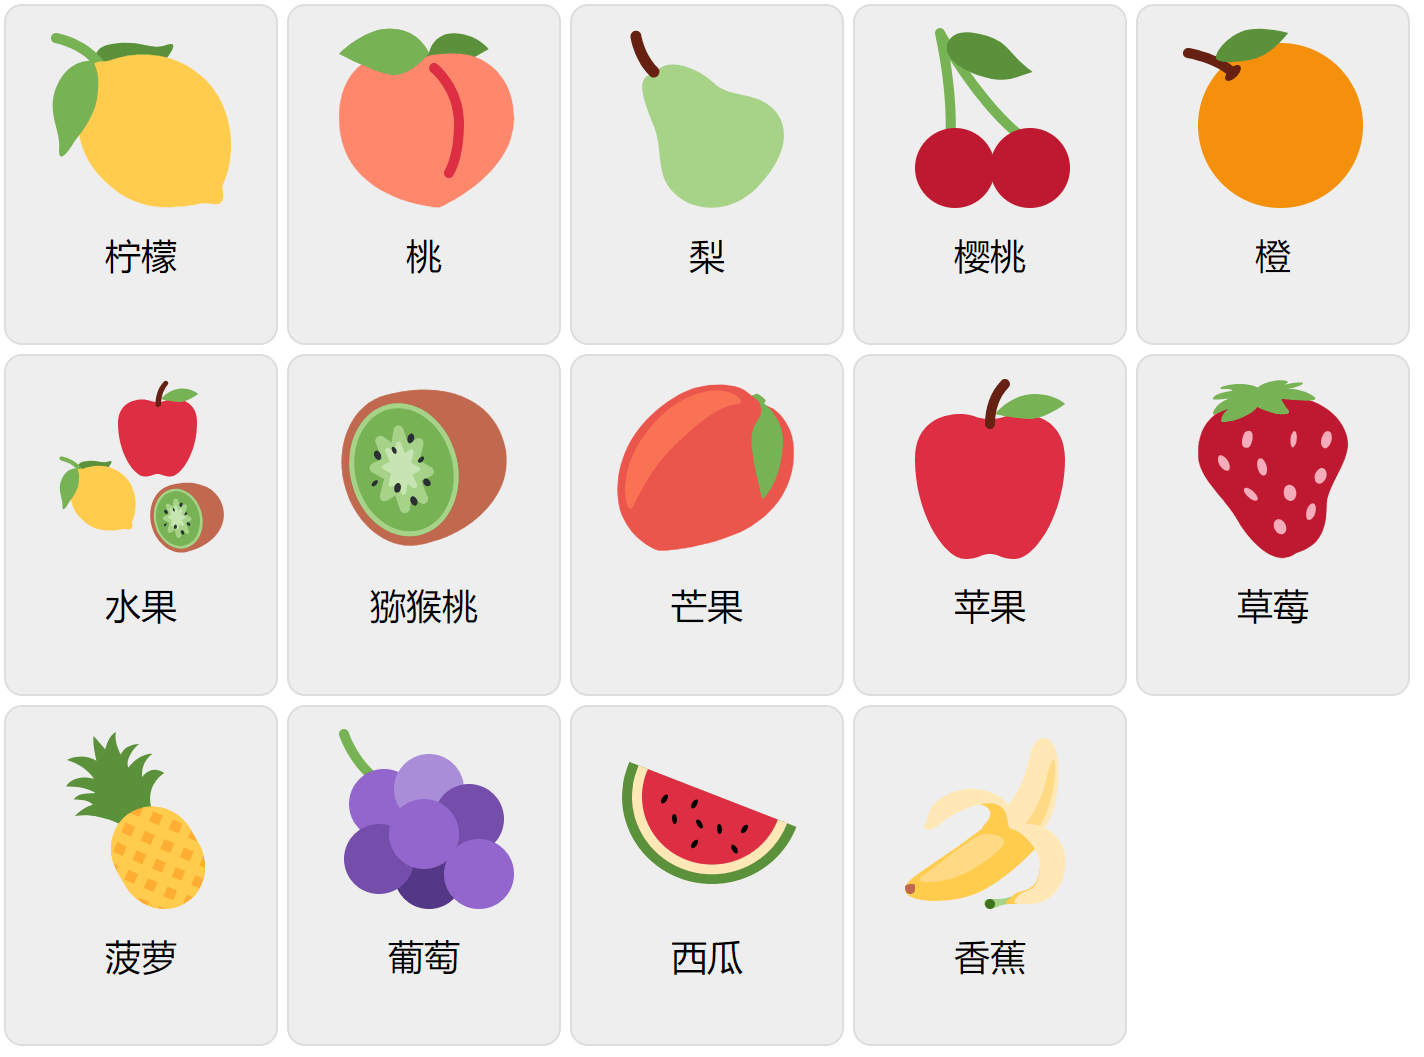 Frutas en chino mandarín